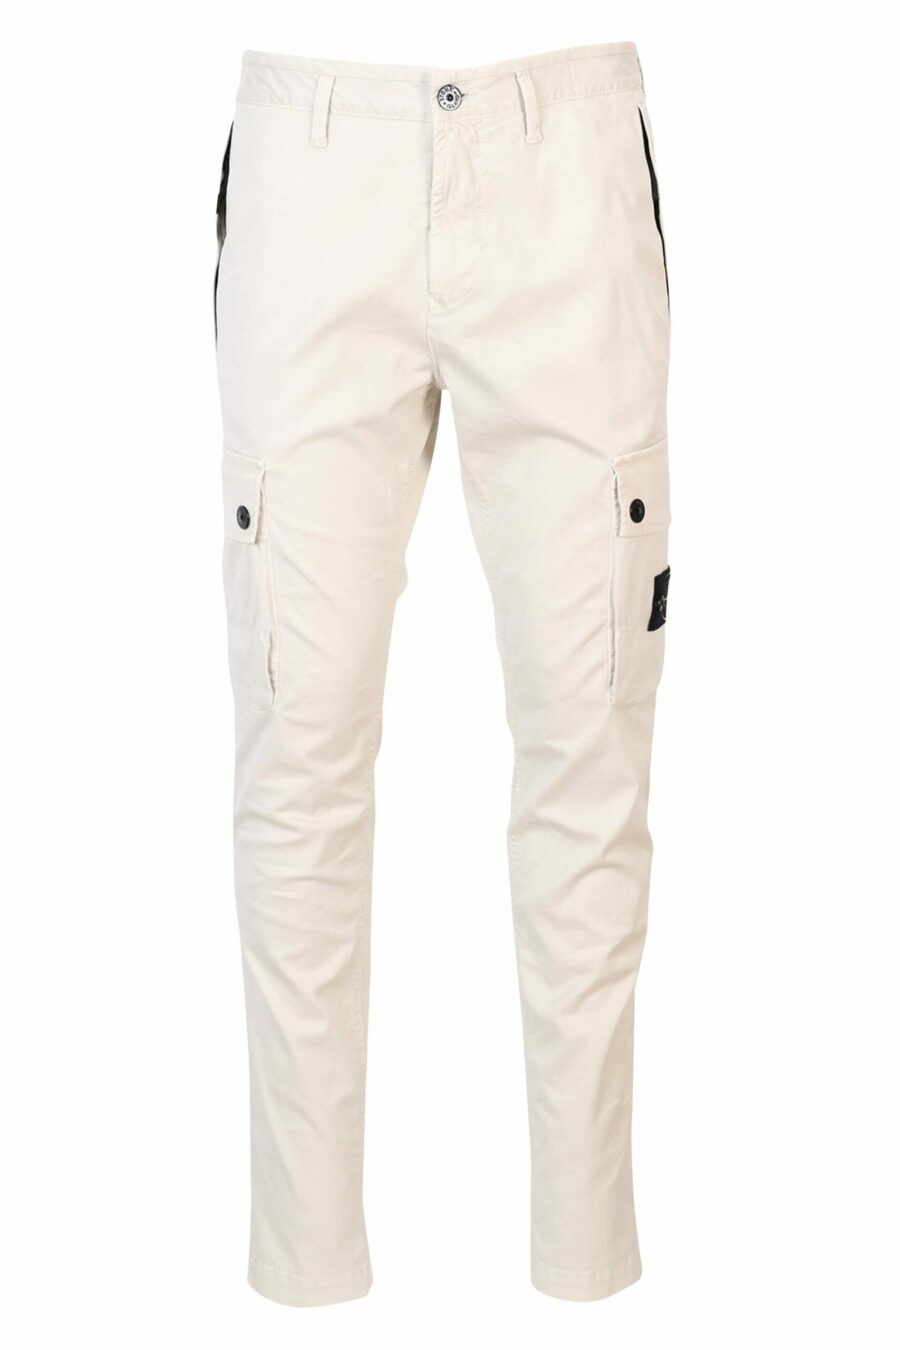 Pantalon slim beige avec patch logo sur le côté - 8052572752537 scaled